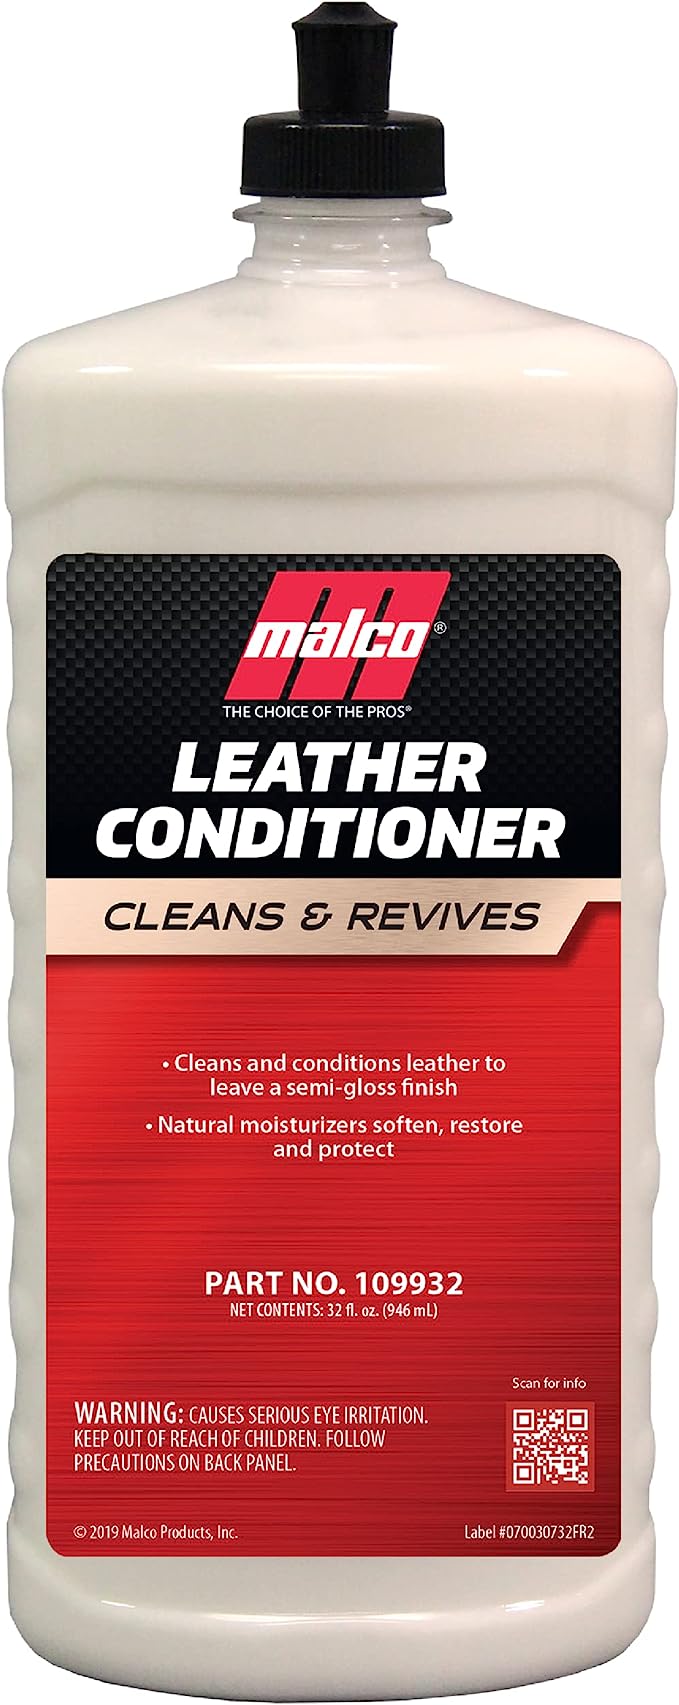 Malco - Leather Conditioner 32oz